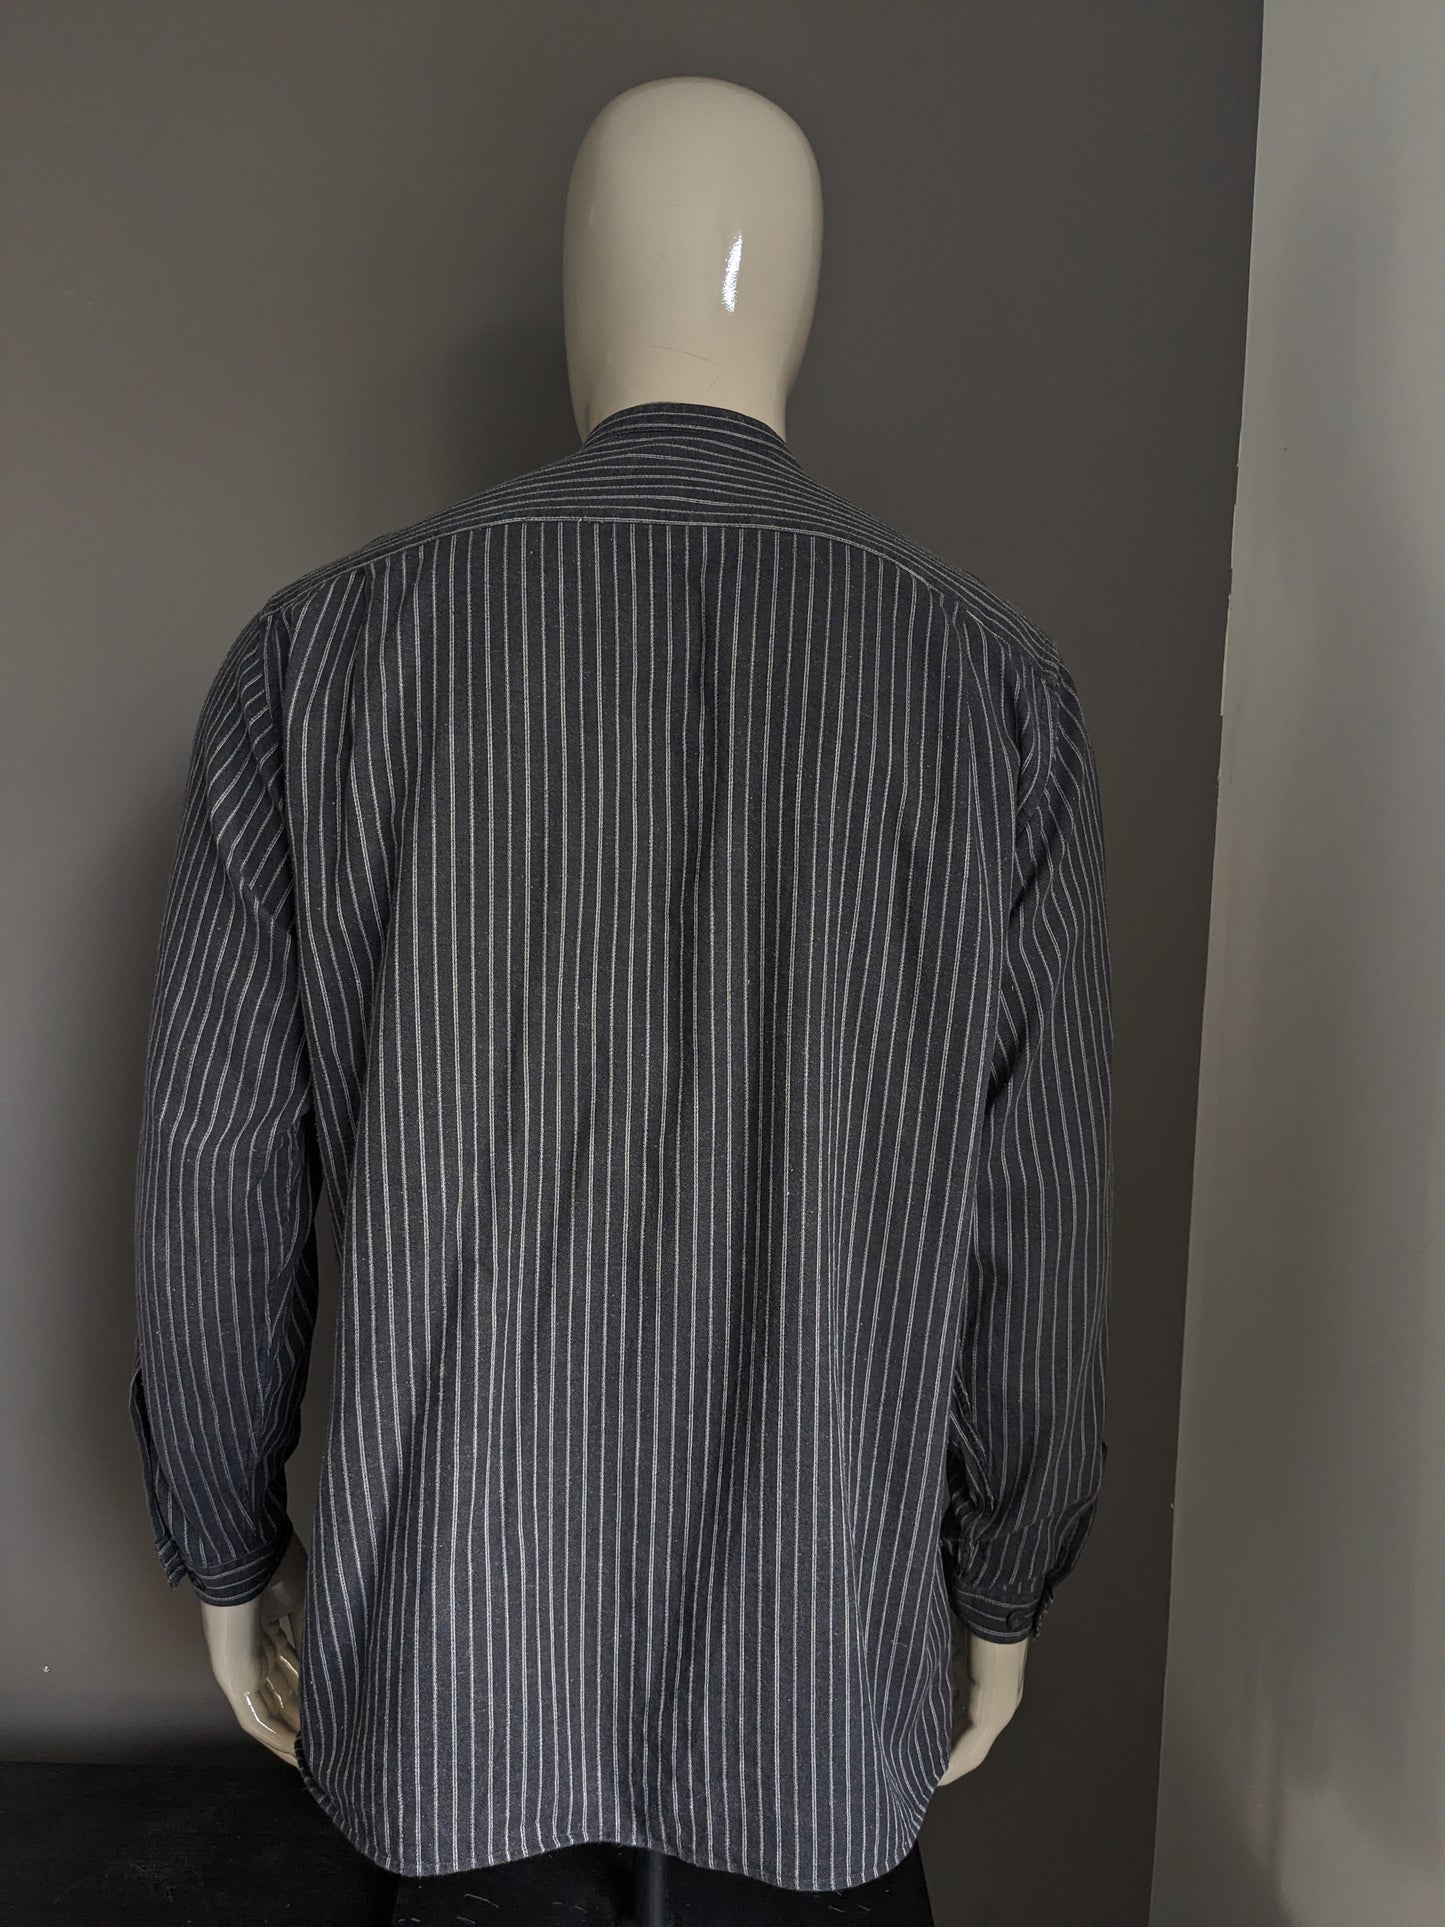 Boss vintage Hugo Boss Shirt con Mao / Farmers / Collar in piedi. A strisce in bianco e nero. Taglia M / L.